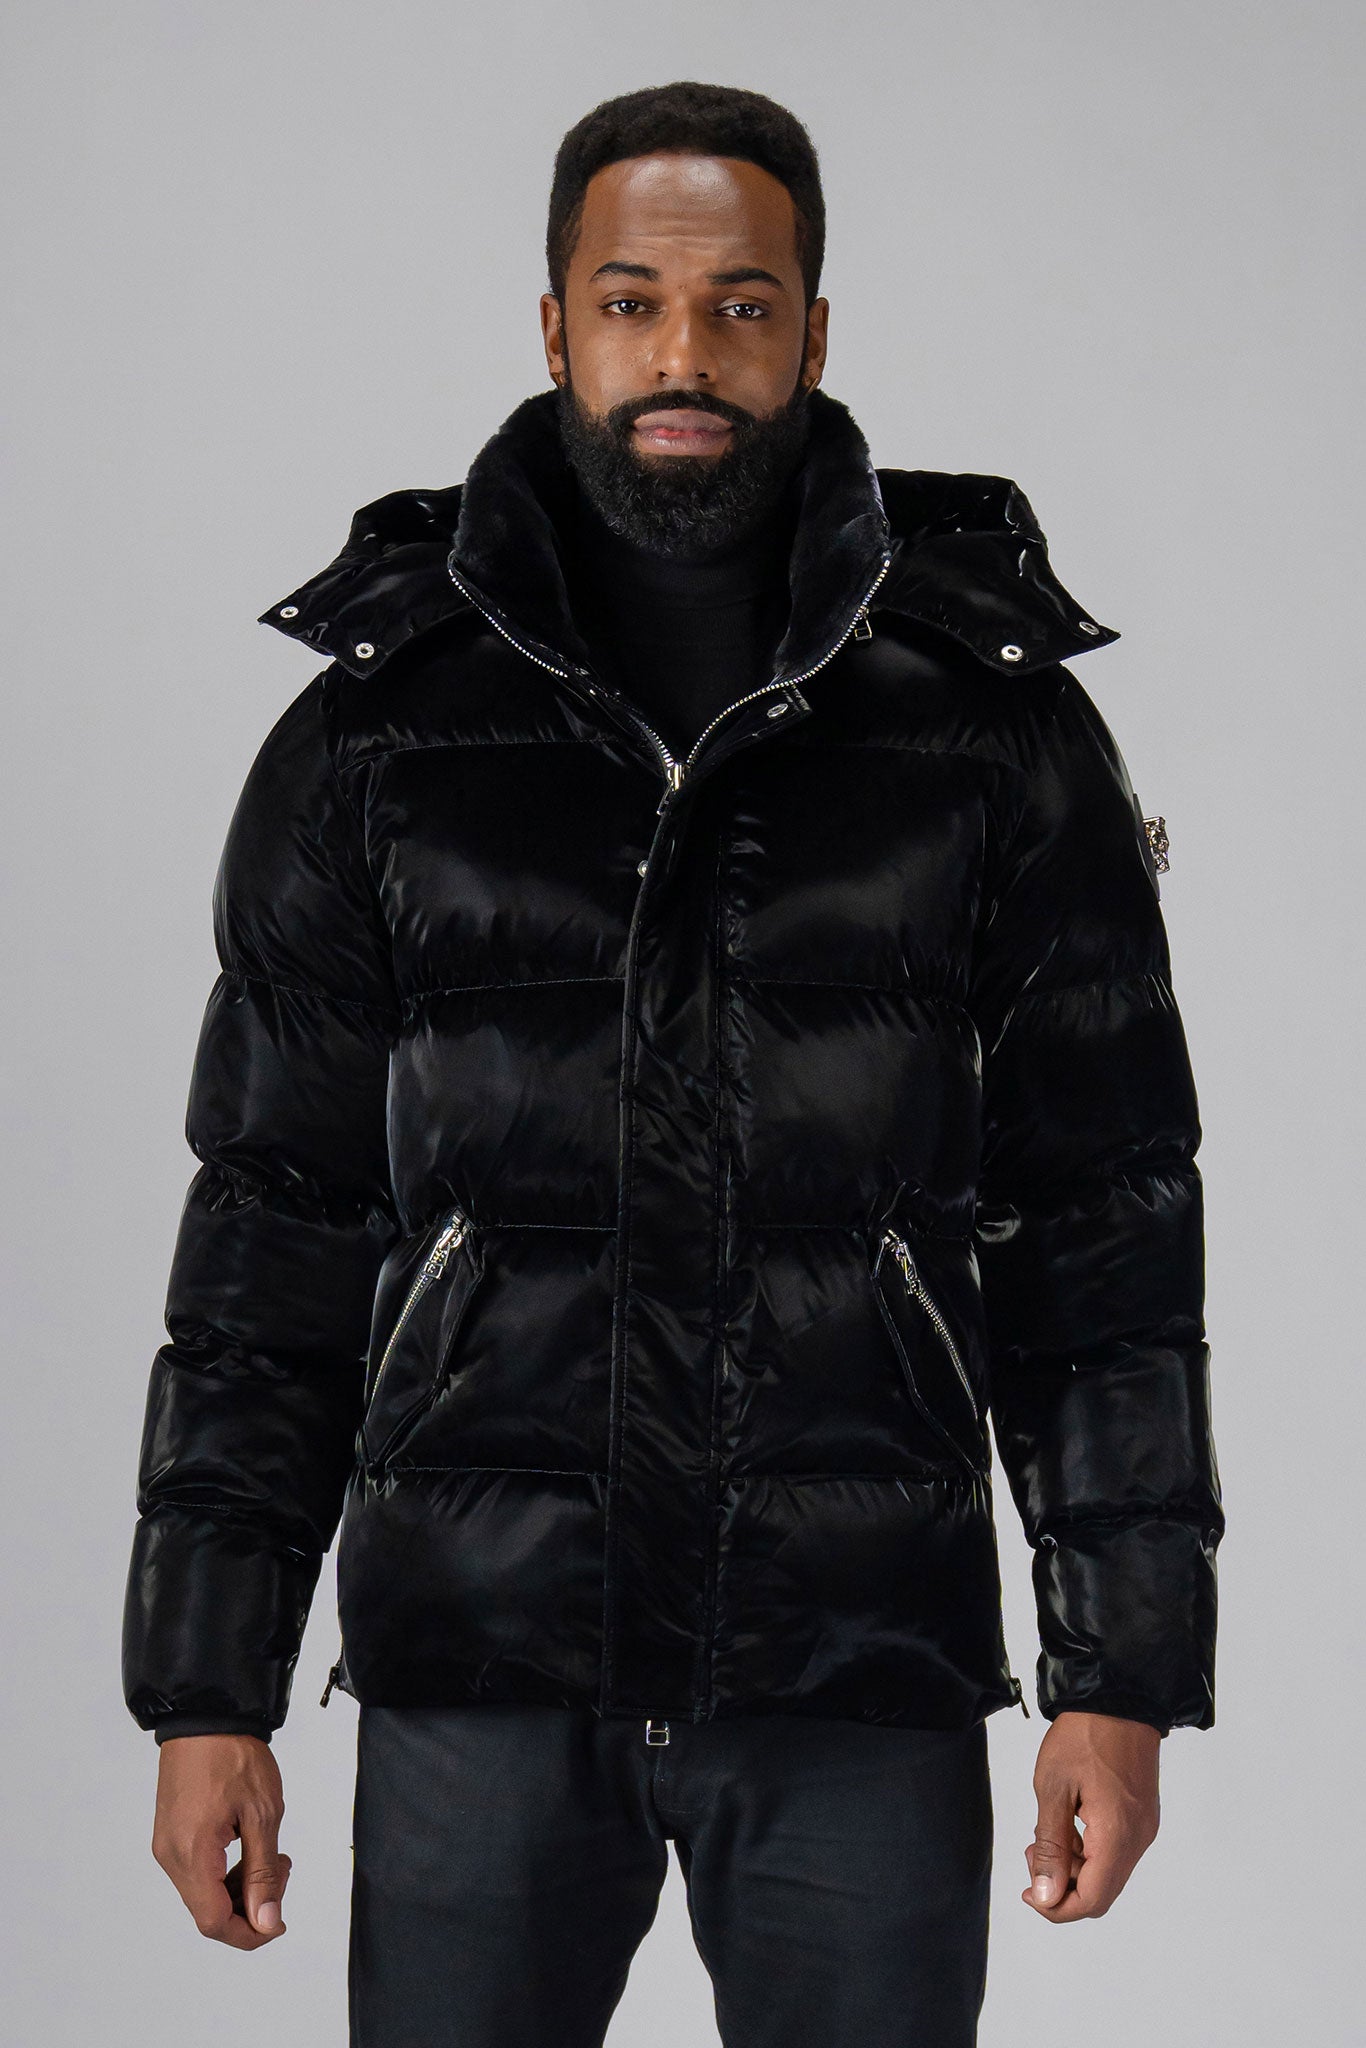 Woodpecker Men's Bumnester Winter coat. High-end Canadian designer winter coat for men in 